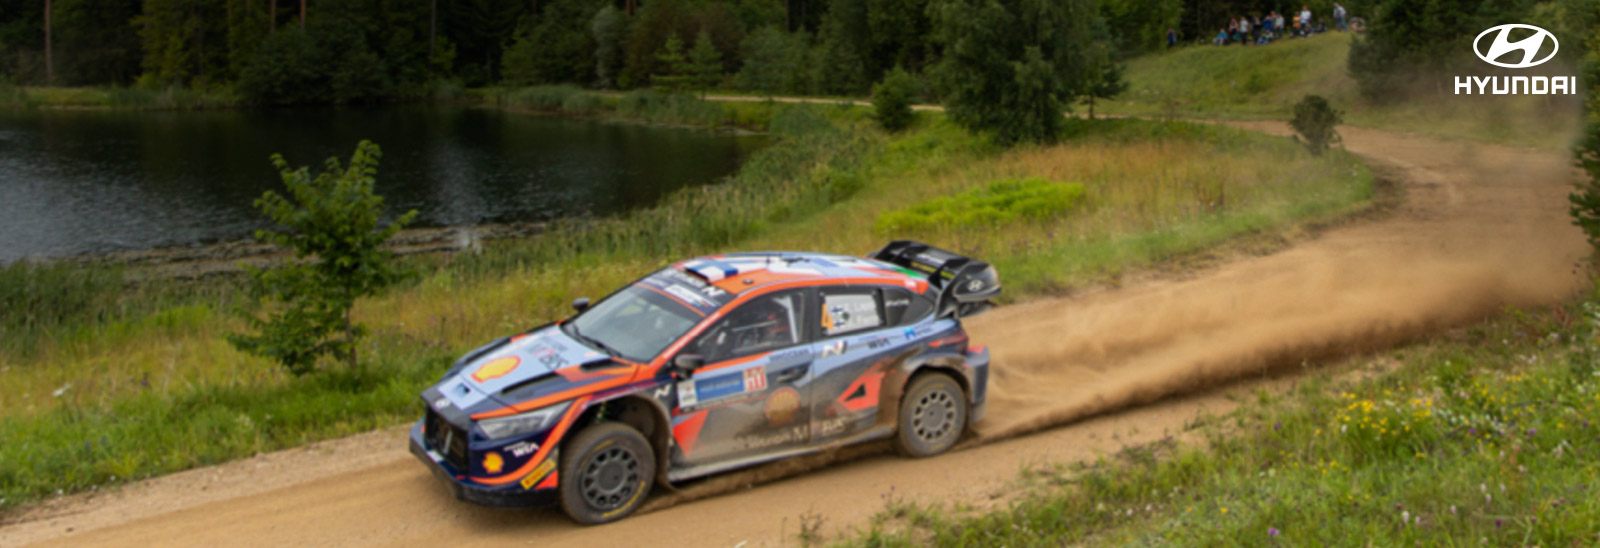 Auto Hyundai en el Rally de Estonia